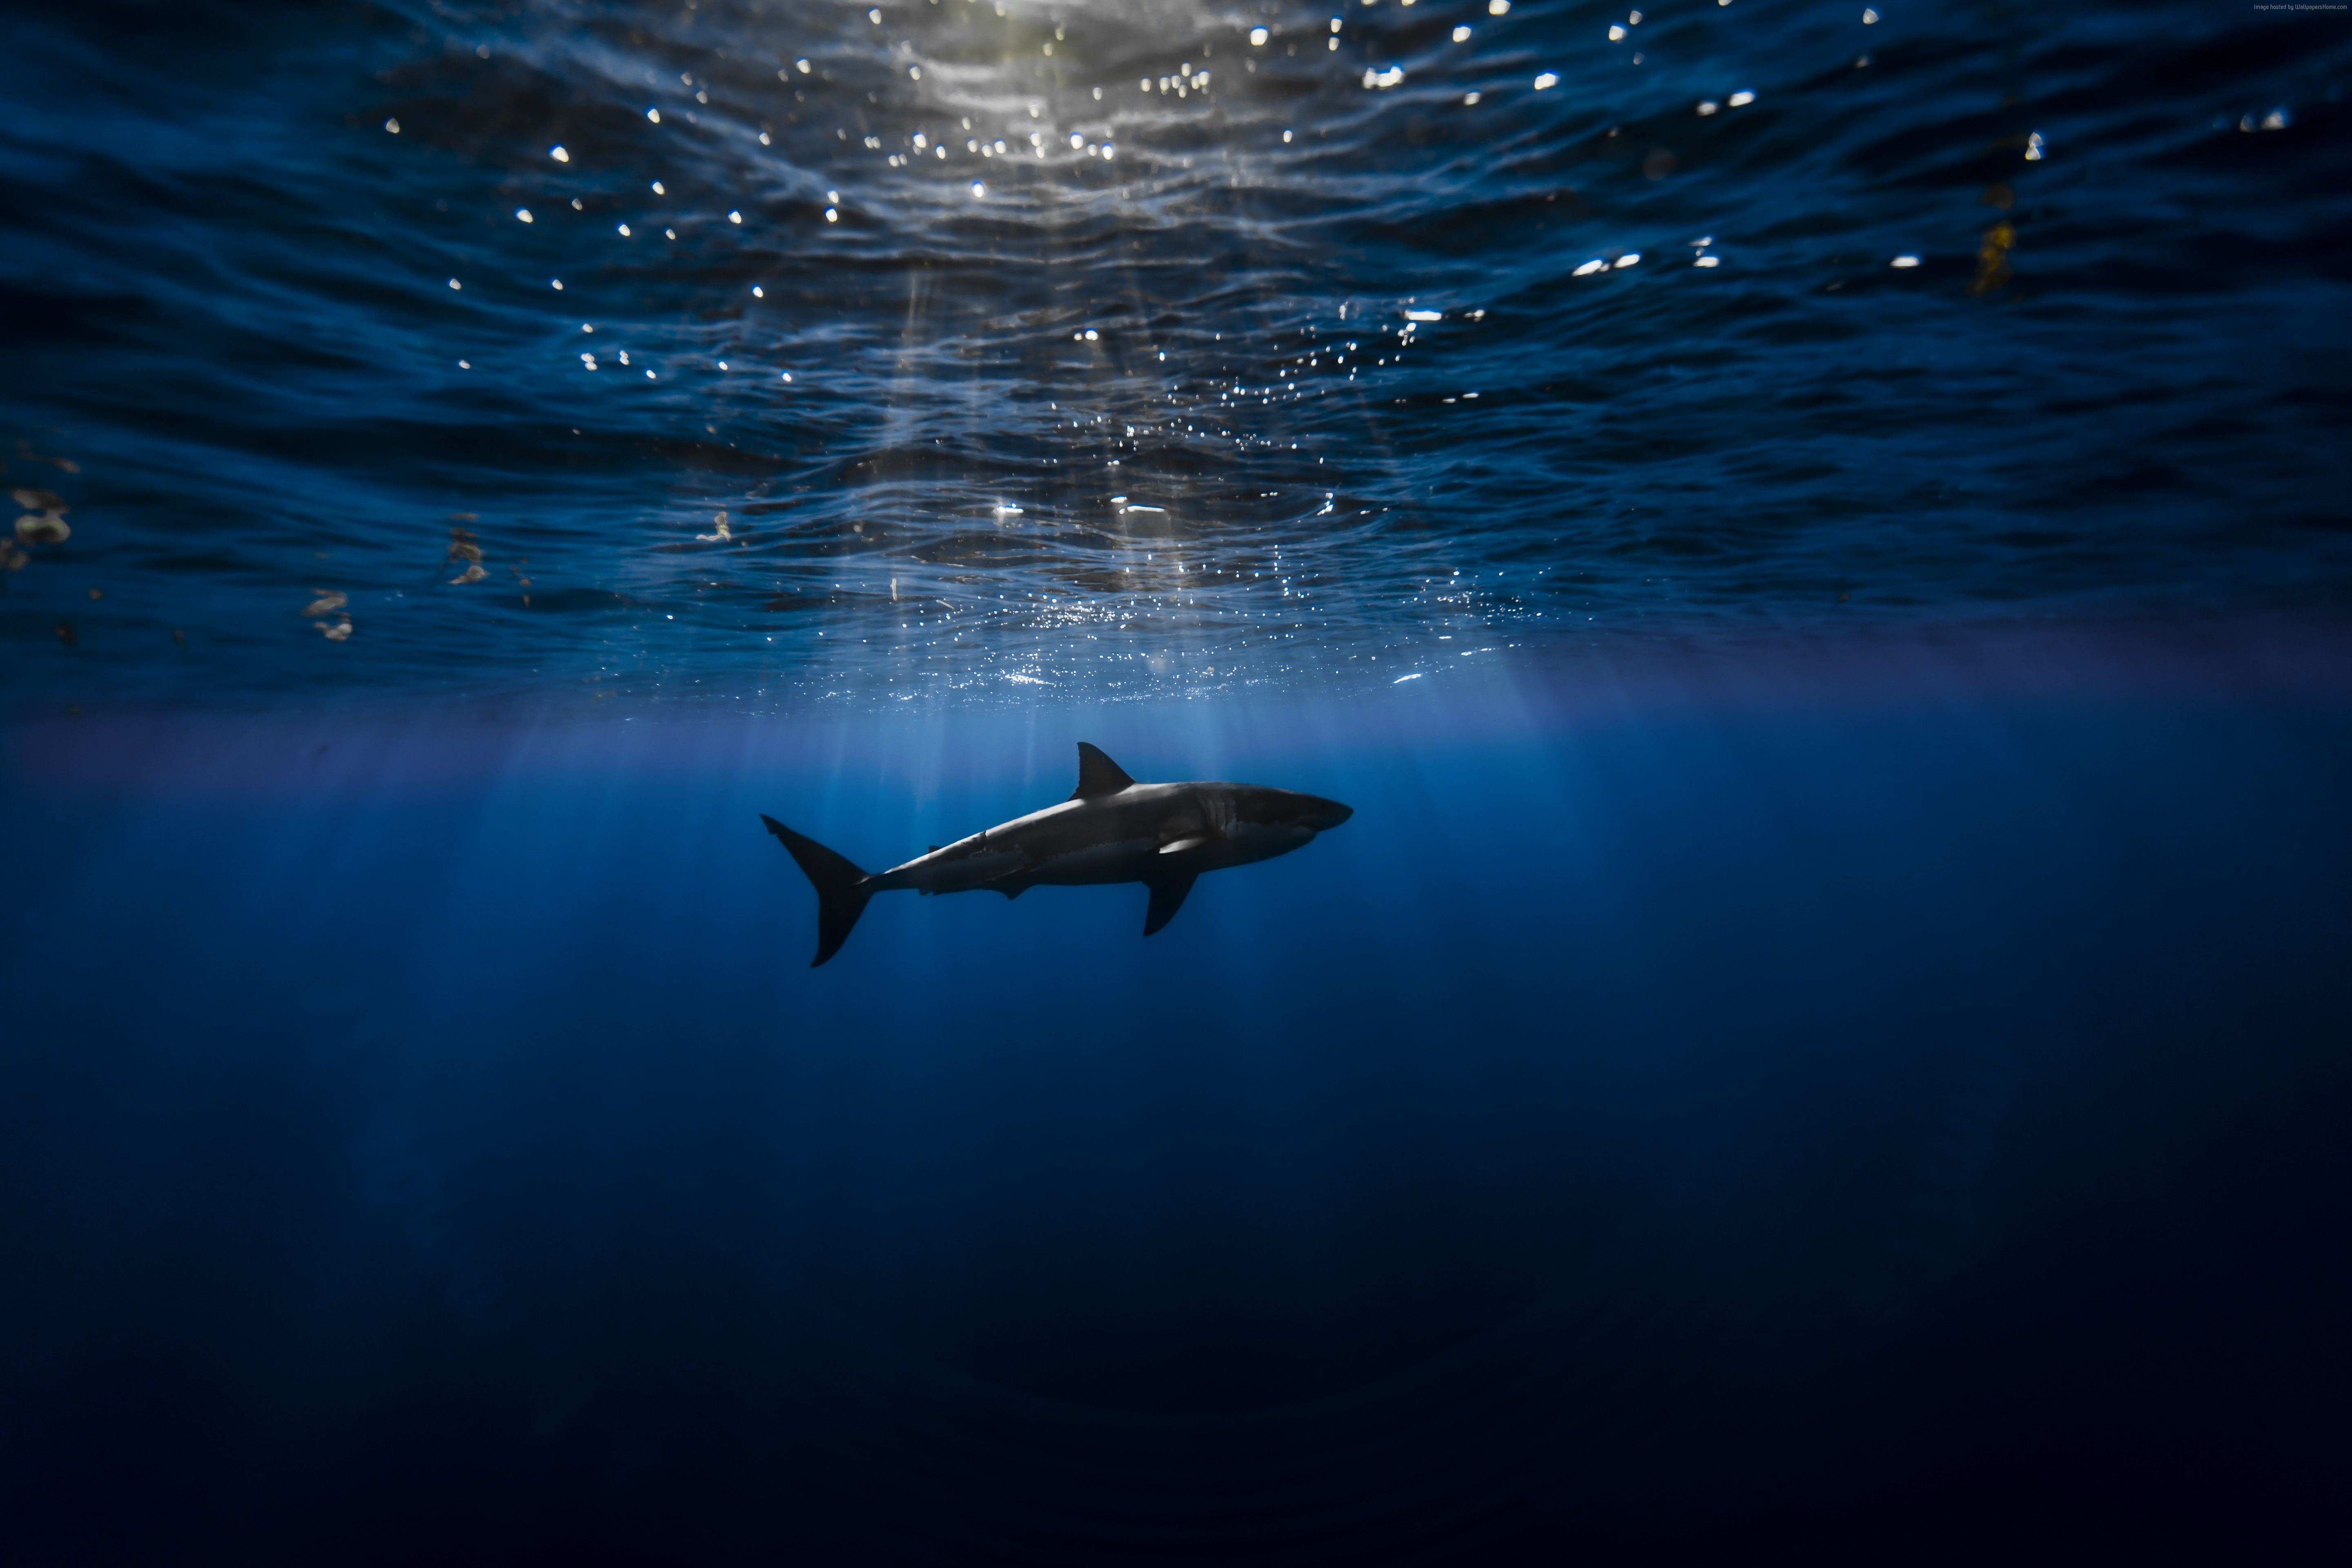 Shark, Atlantic ocean, underwater, Best Diving Sites, animals in the wild